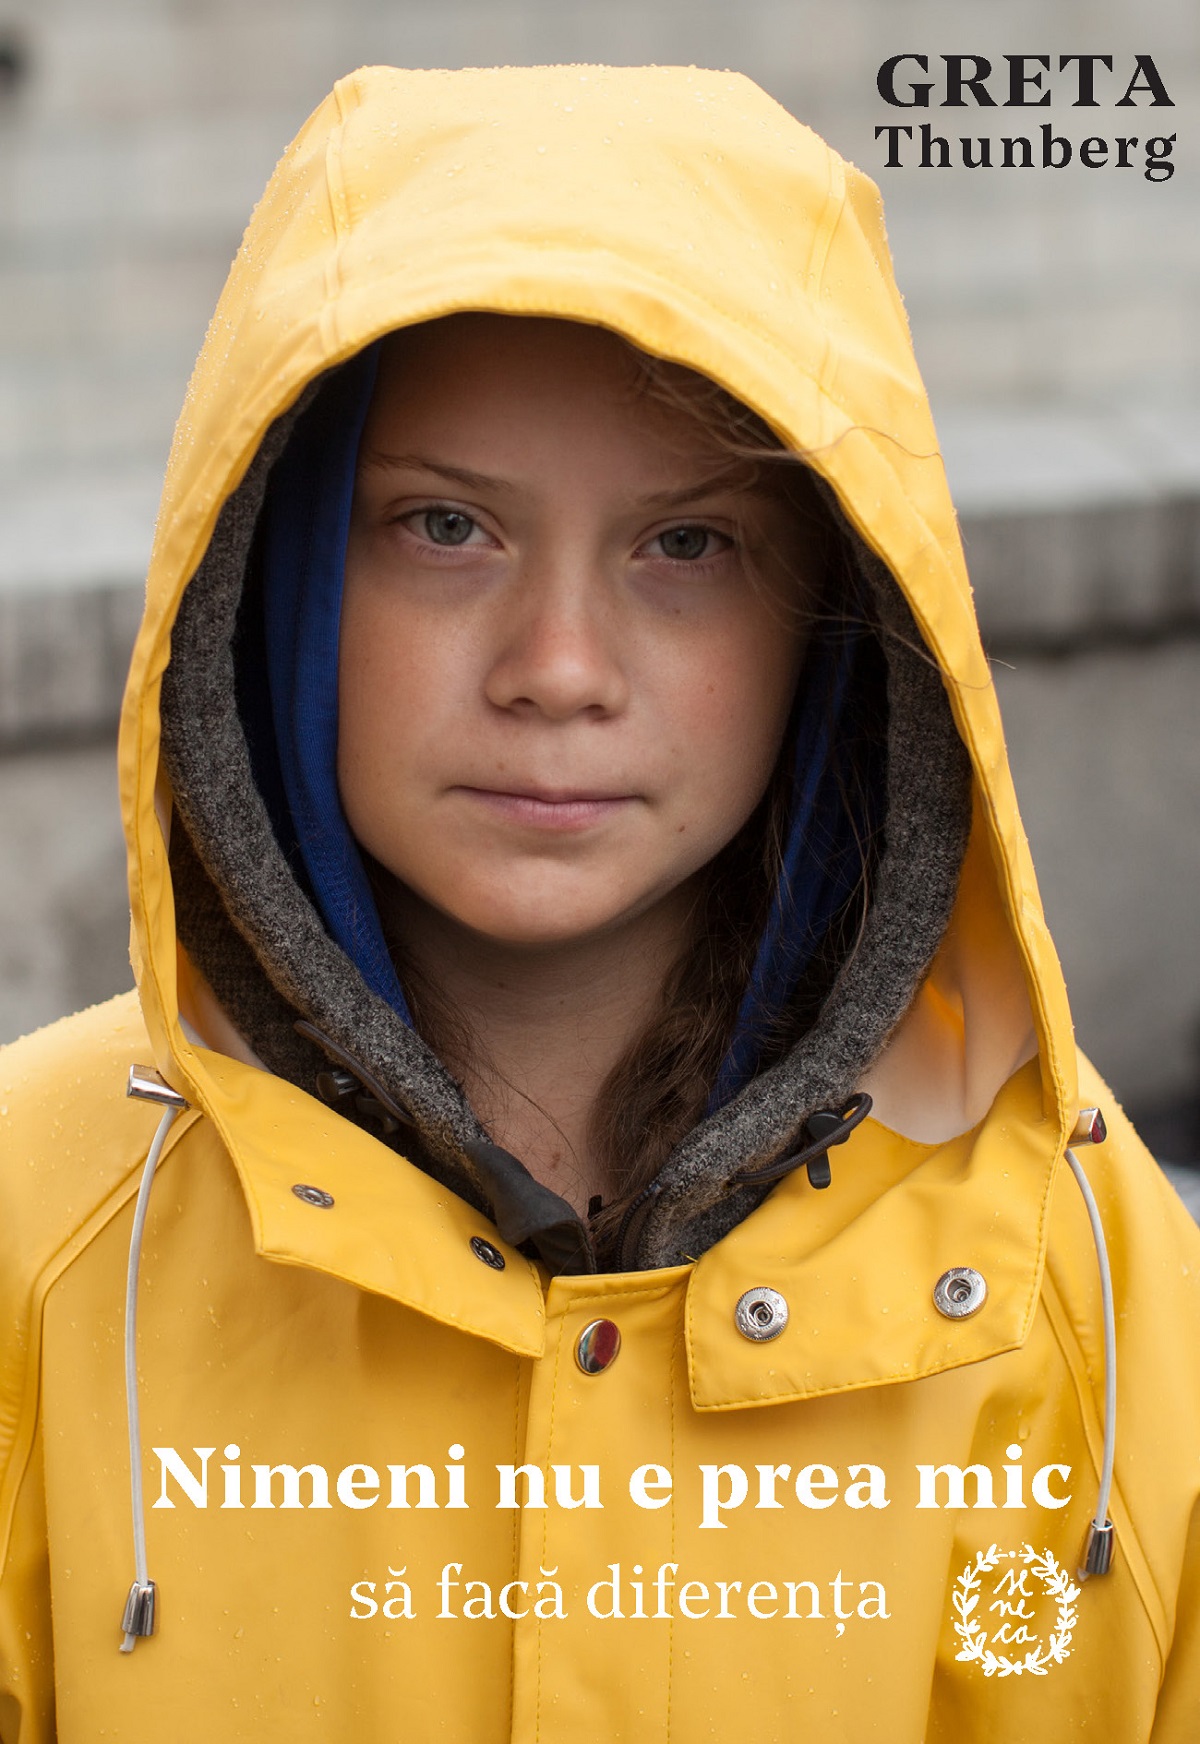 Nimeni nu e prea mic sa faca diferenta - Greta Thunberg